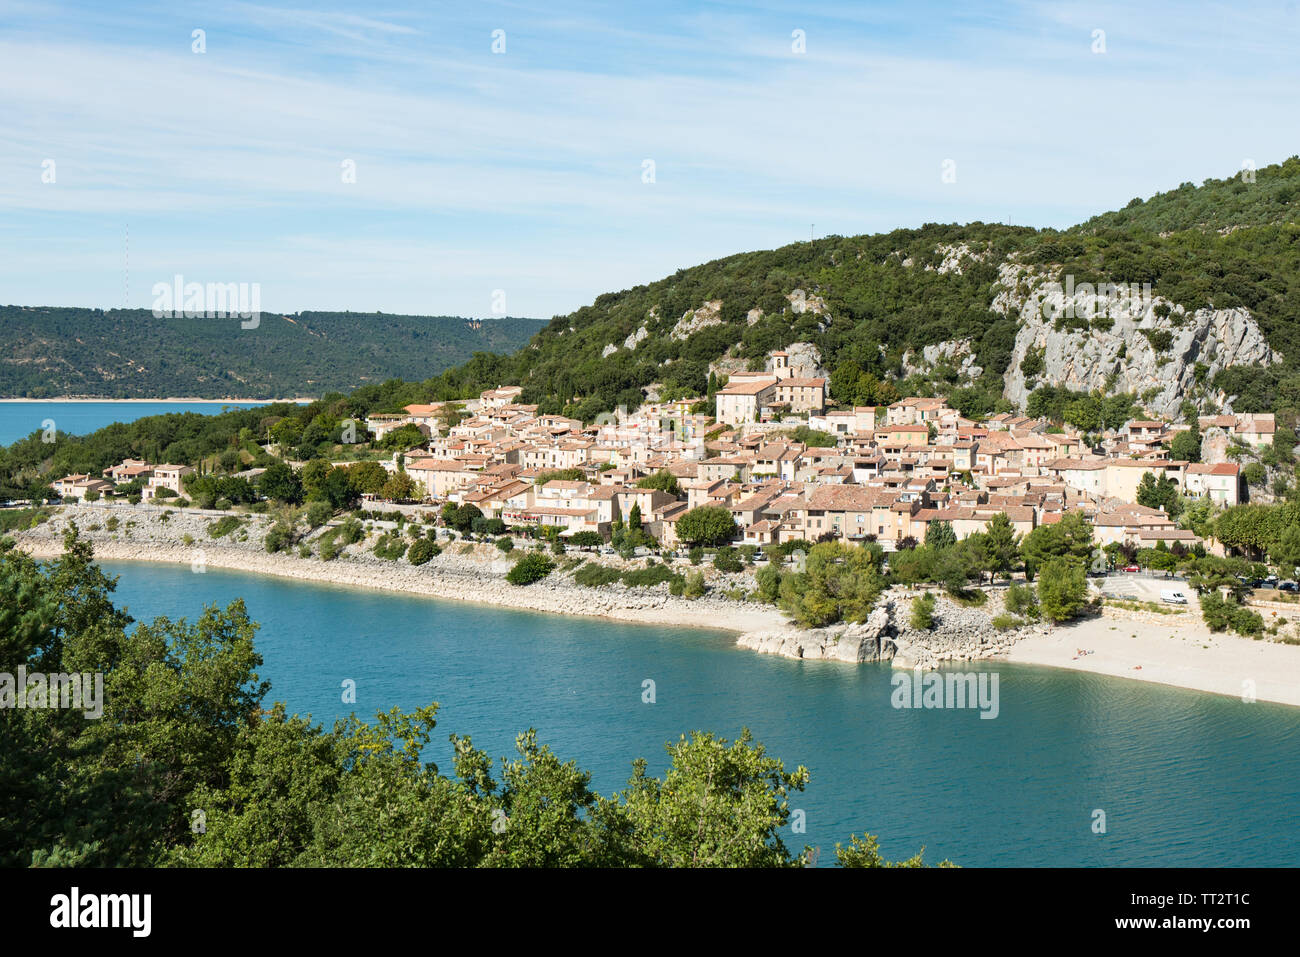 French village of Bauduen, Lac de sainte croix, le verdon, france Stock Photo